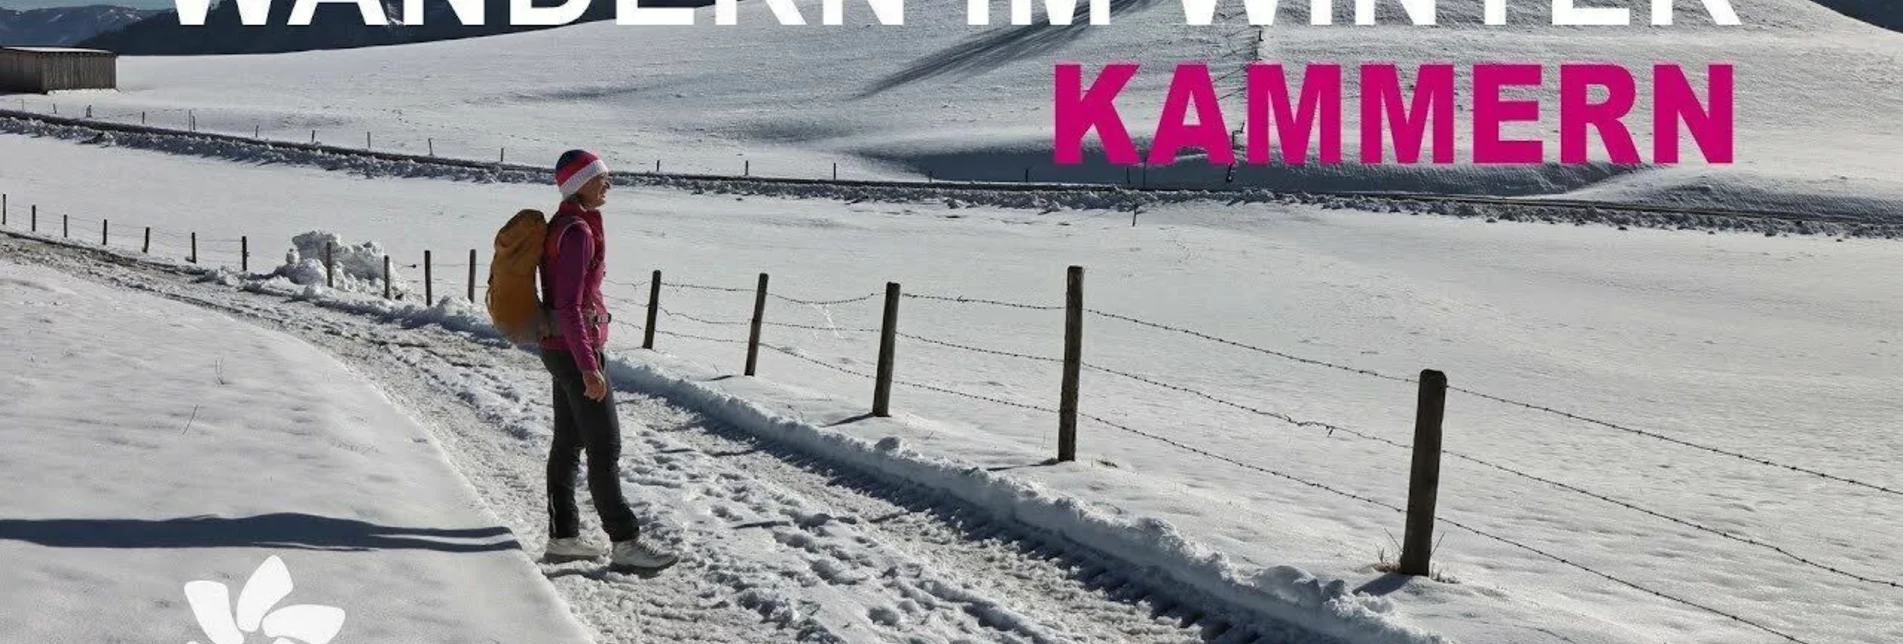 Winter Hiking Get to know Kammern along the Marterlweg no. 2 - Touren-Impression #1 | © wegesaktiv